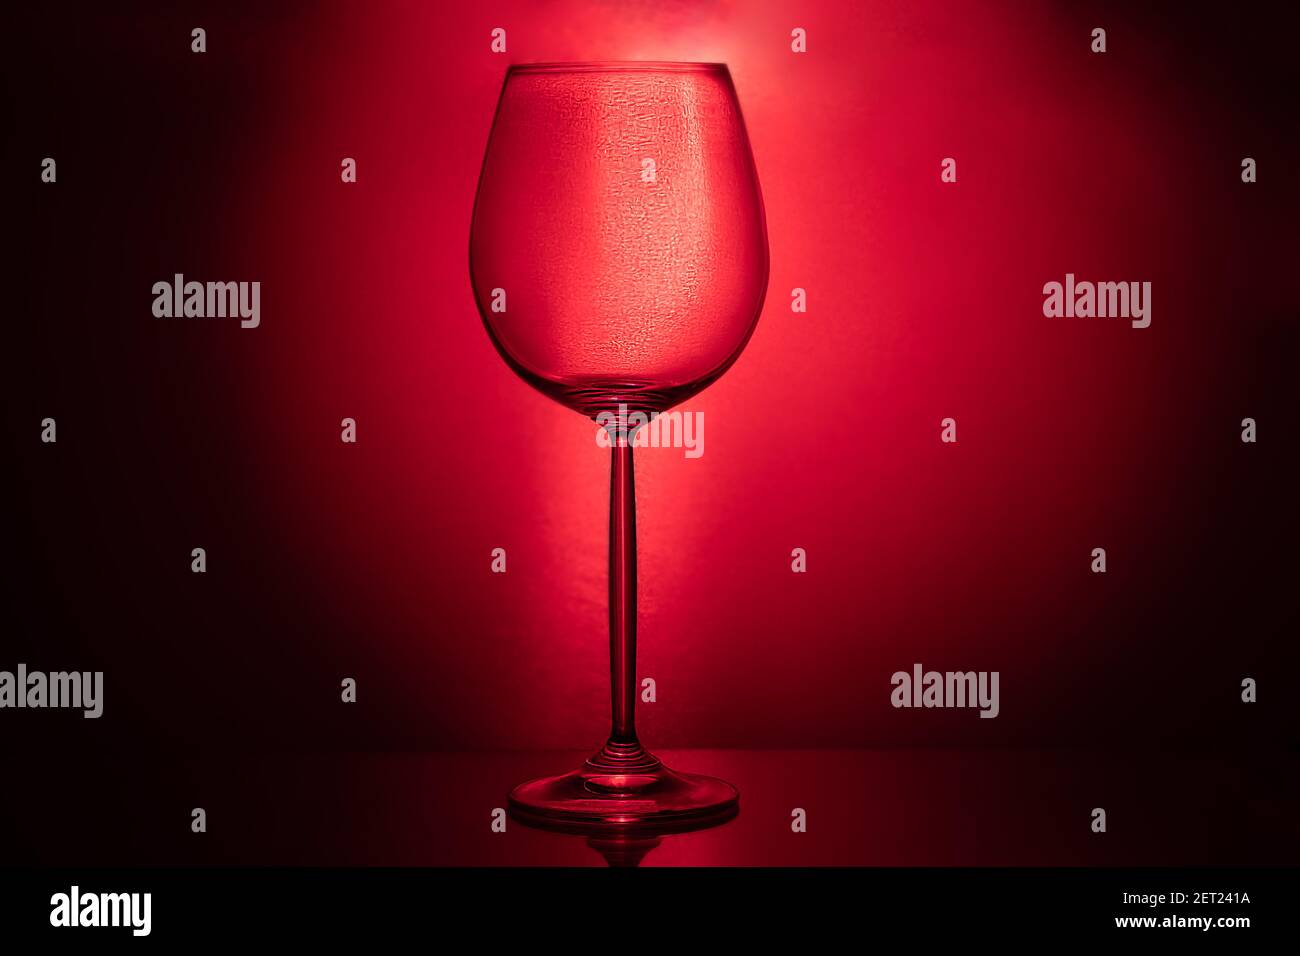 Weingläser mit farbigem Boden auf dunklem Hintergrund. Gerichte für Wein  und andere Getränke. Speicherplatz kopieren Stockfotografie - Alamy